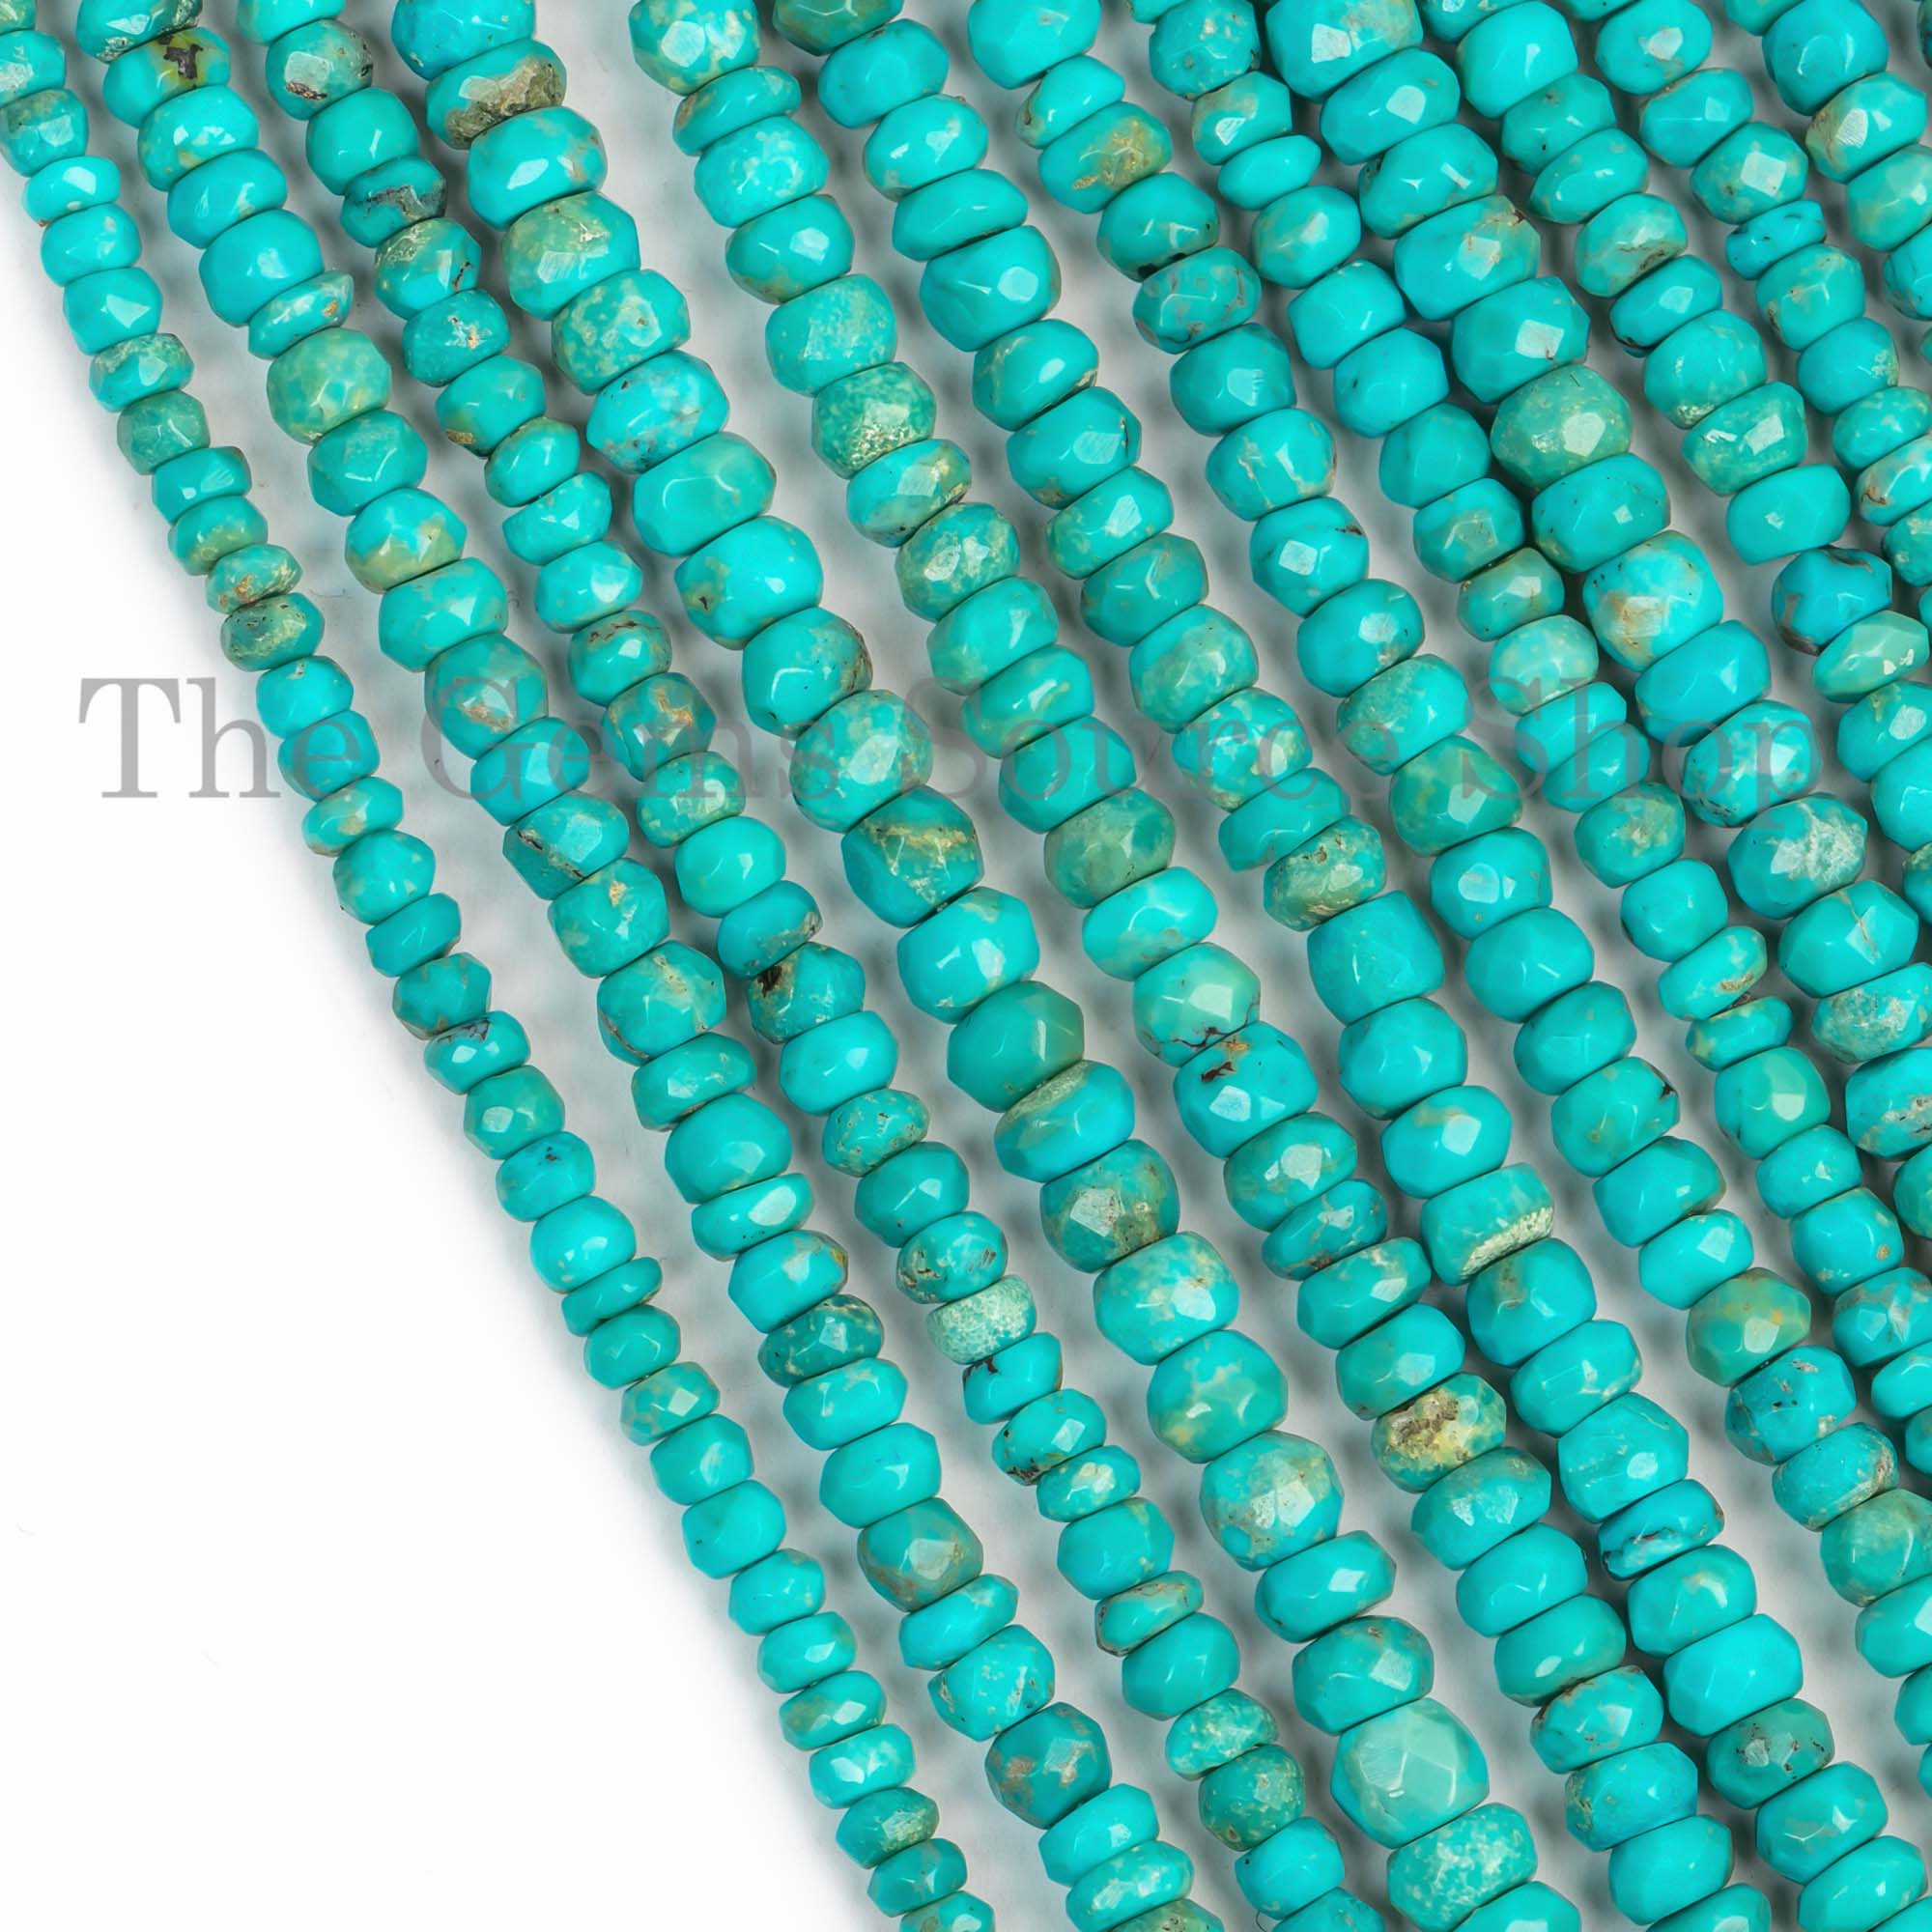 Sleeping Beauty Turquoise Beads, Turquoise Faceted Beads, Turquoise Rondelle Beads, Gemstone Beads